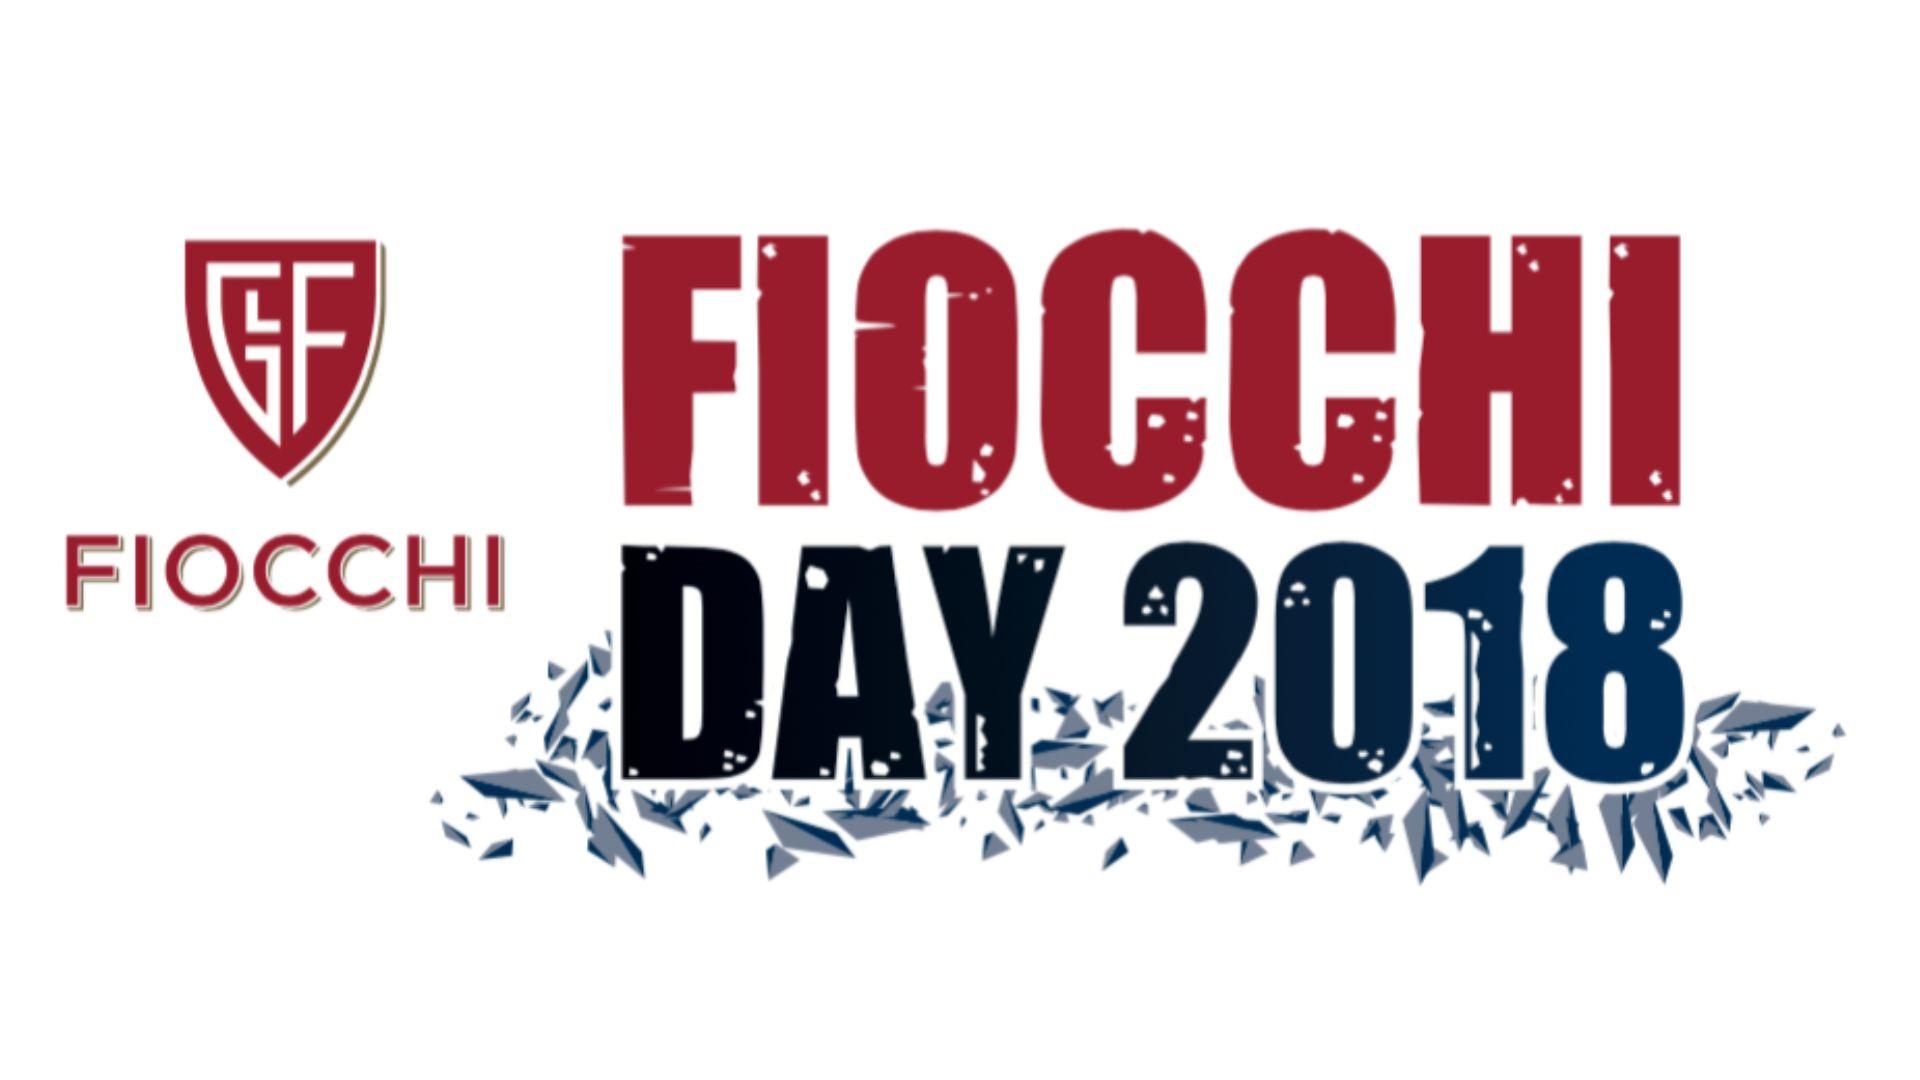 Fiocchi Logo - Fiocchi Day 2018 is just around the corner | fiocchi.com